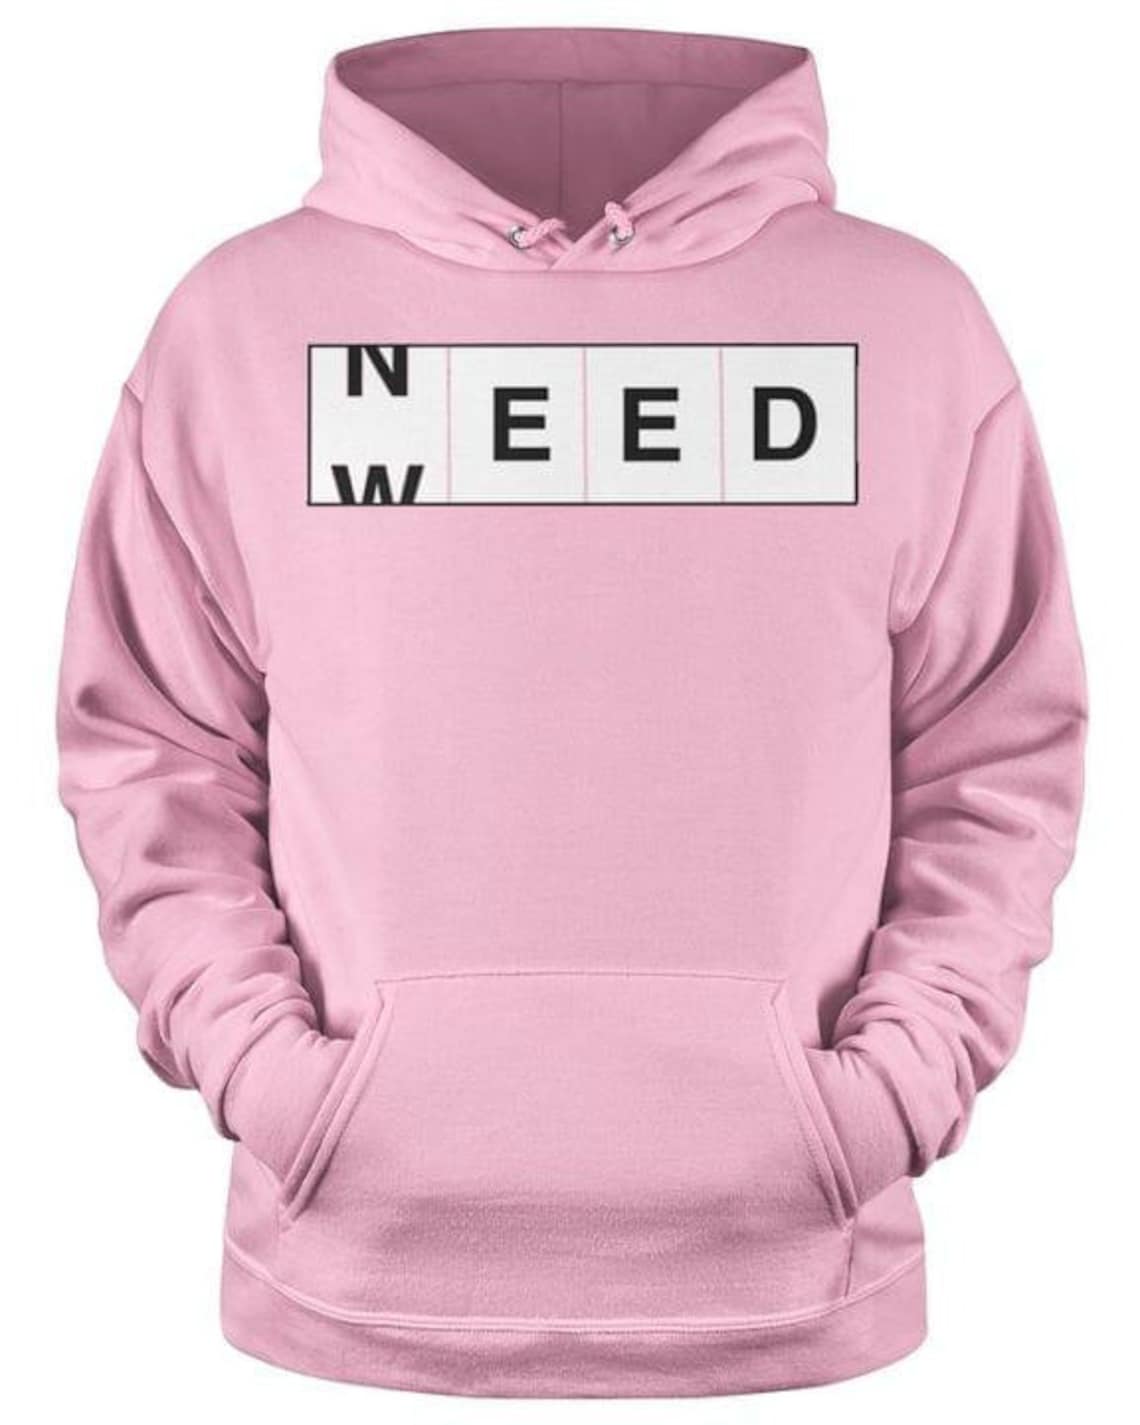 Need Weed Hoodie Pink Hoodie Funny Hoodie | Etsy